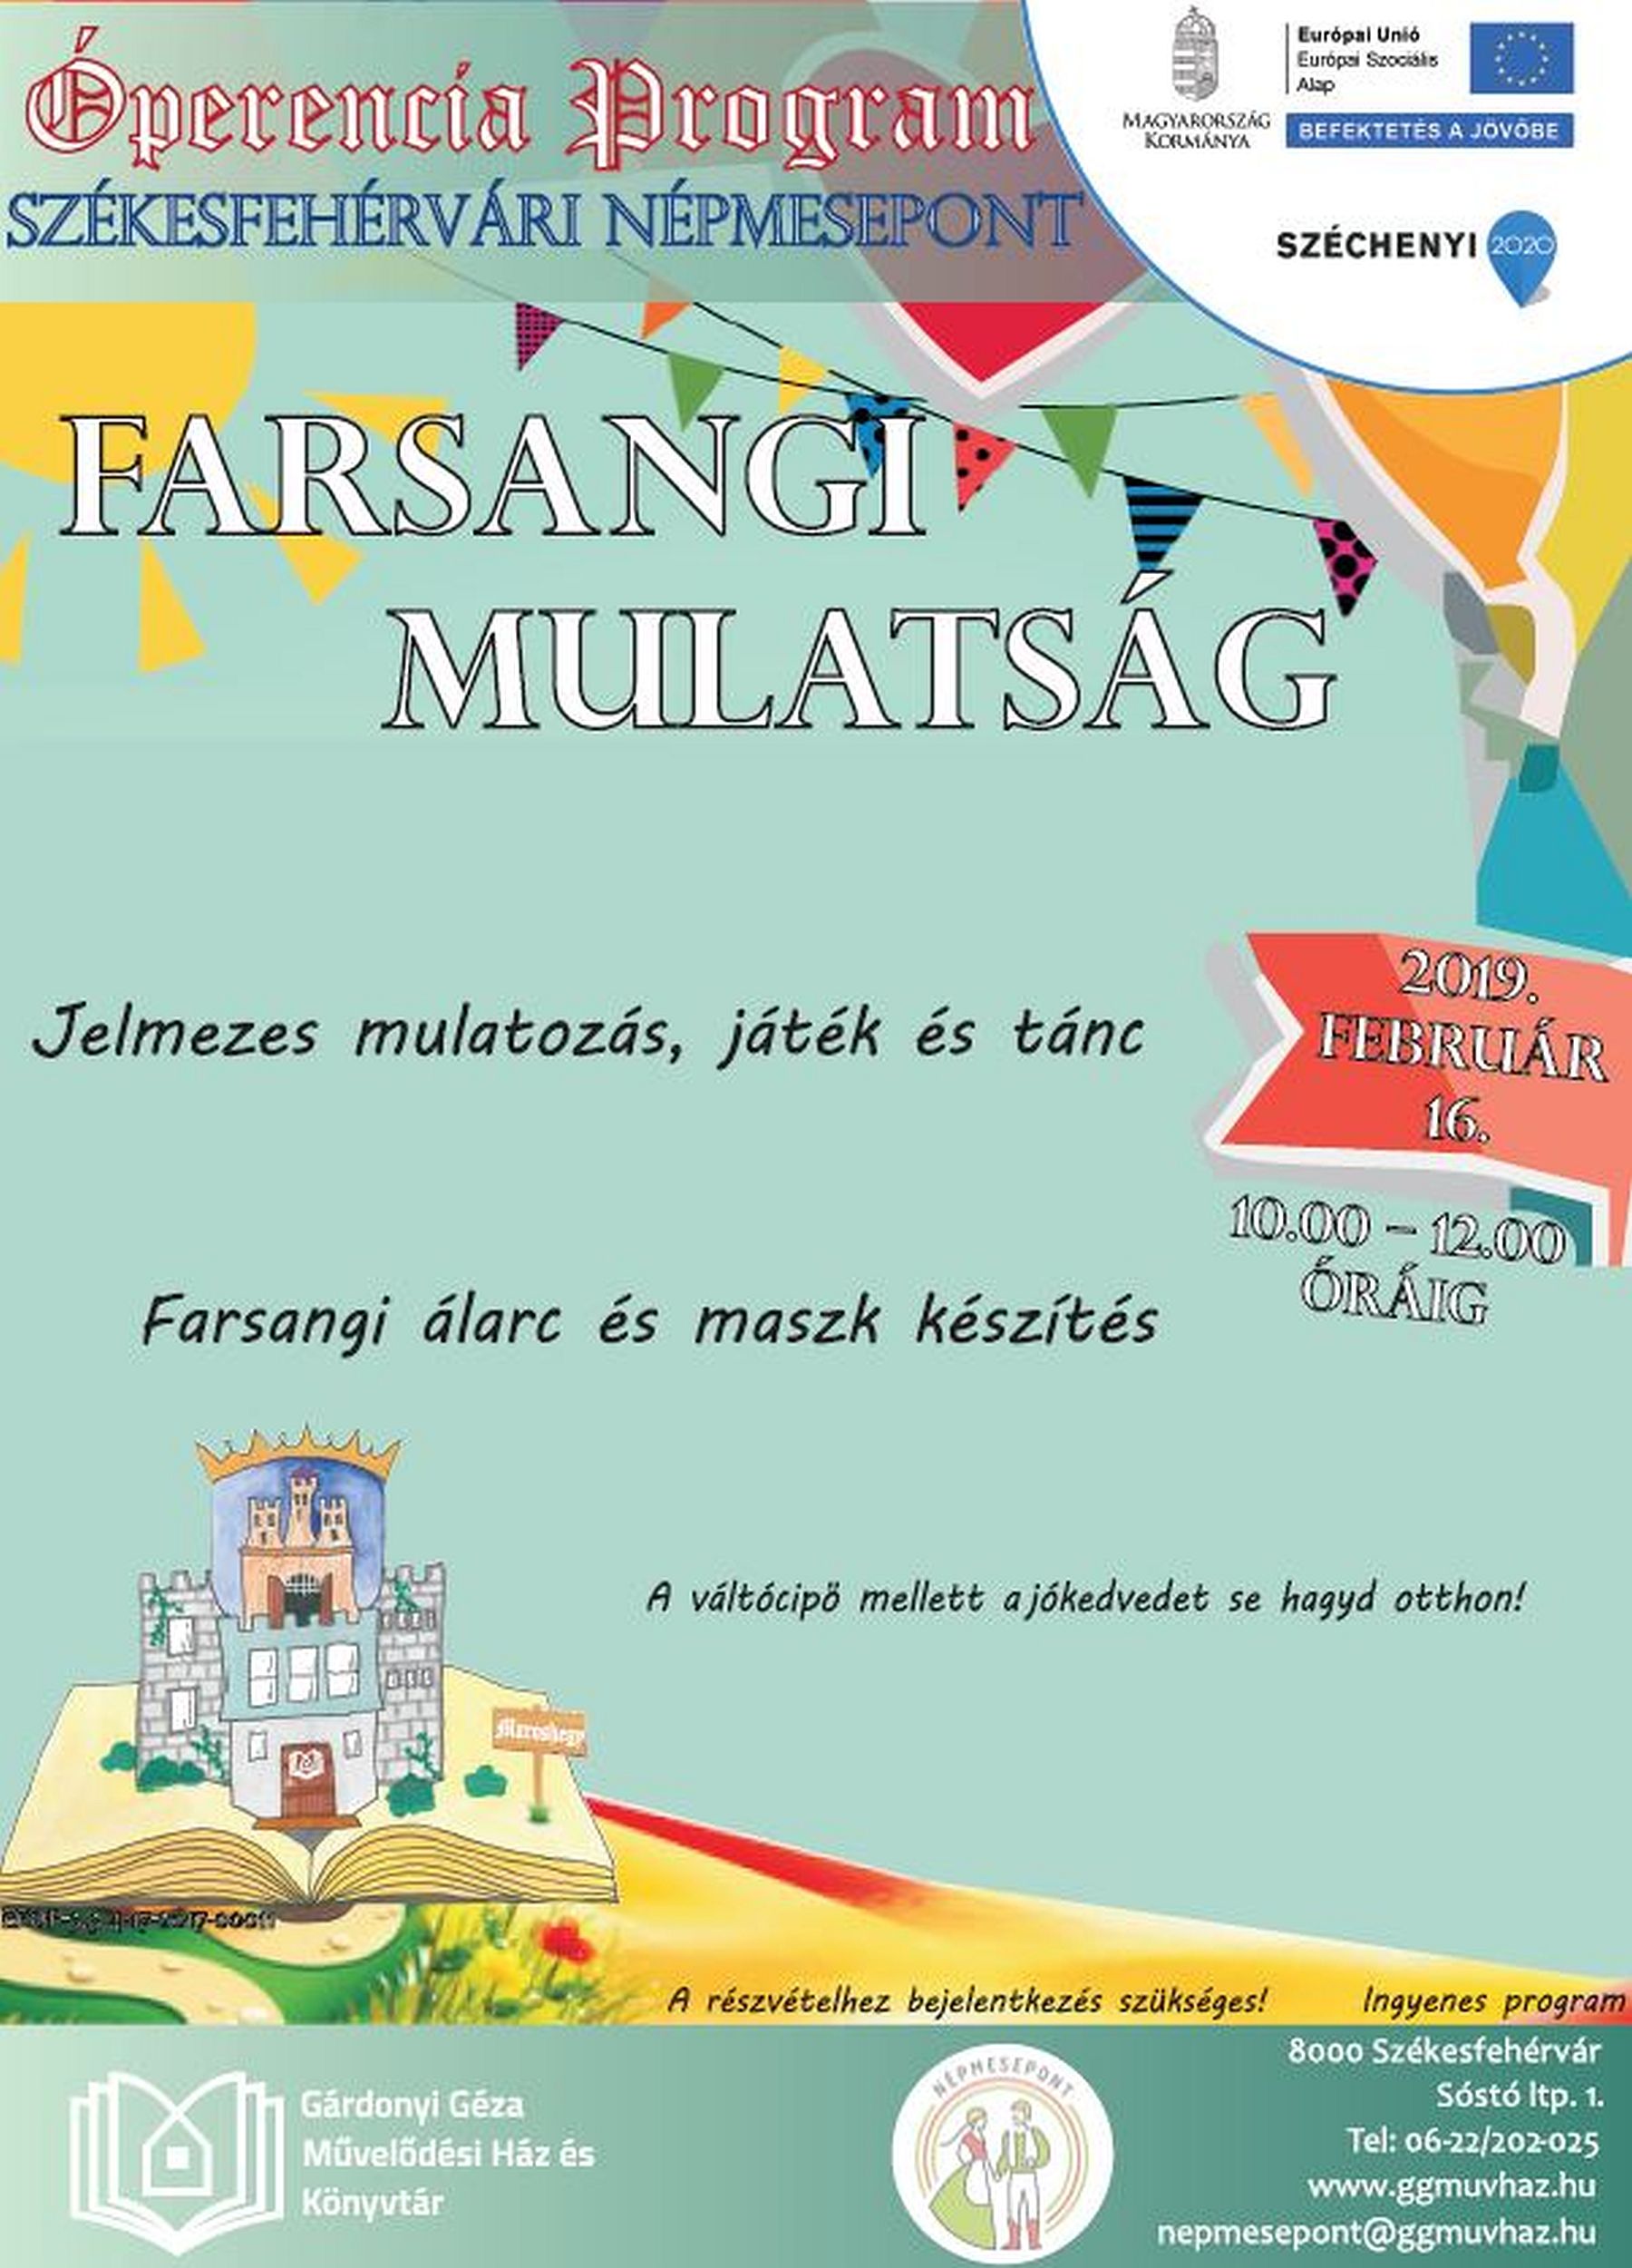 Farsangi mulatság lesz a Székesfehérvári NépmesePonton szombaton